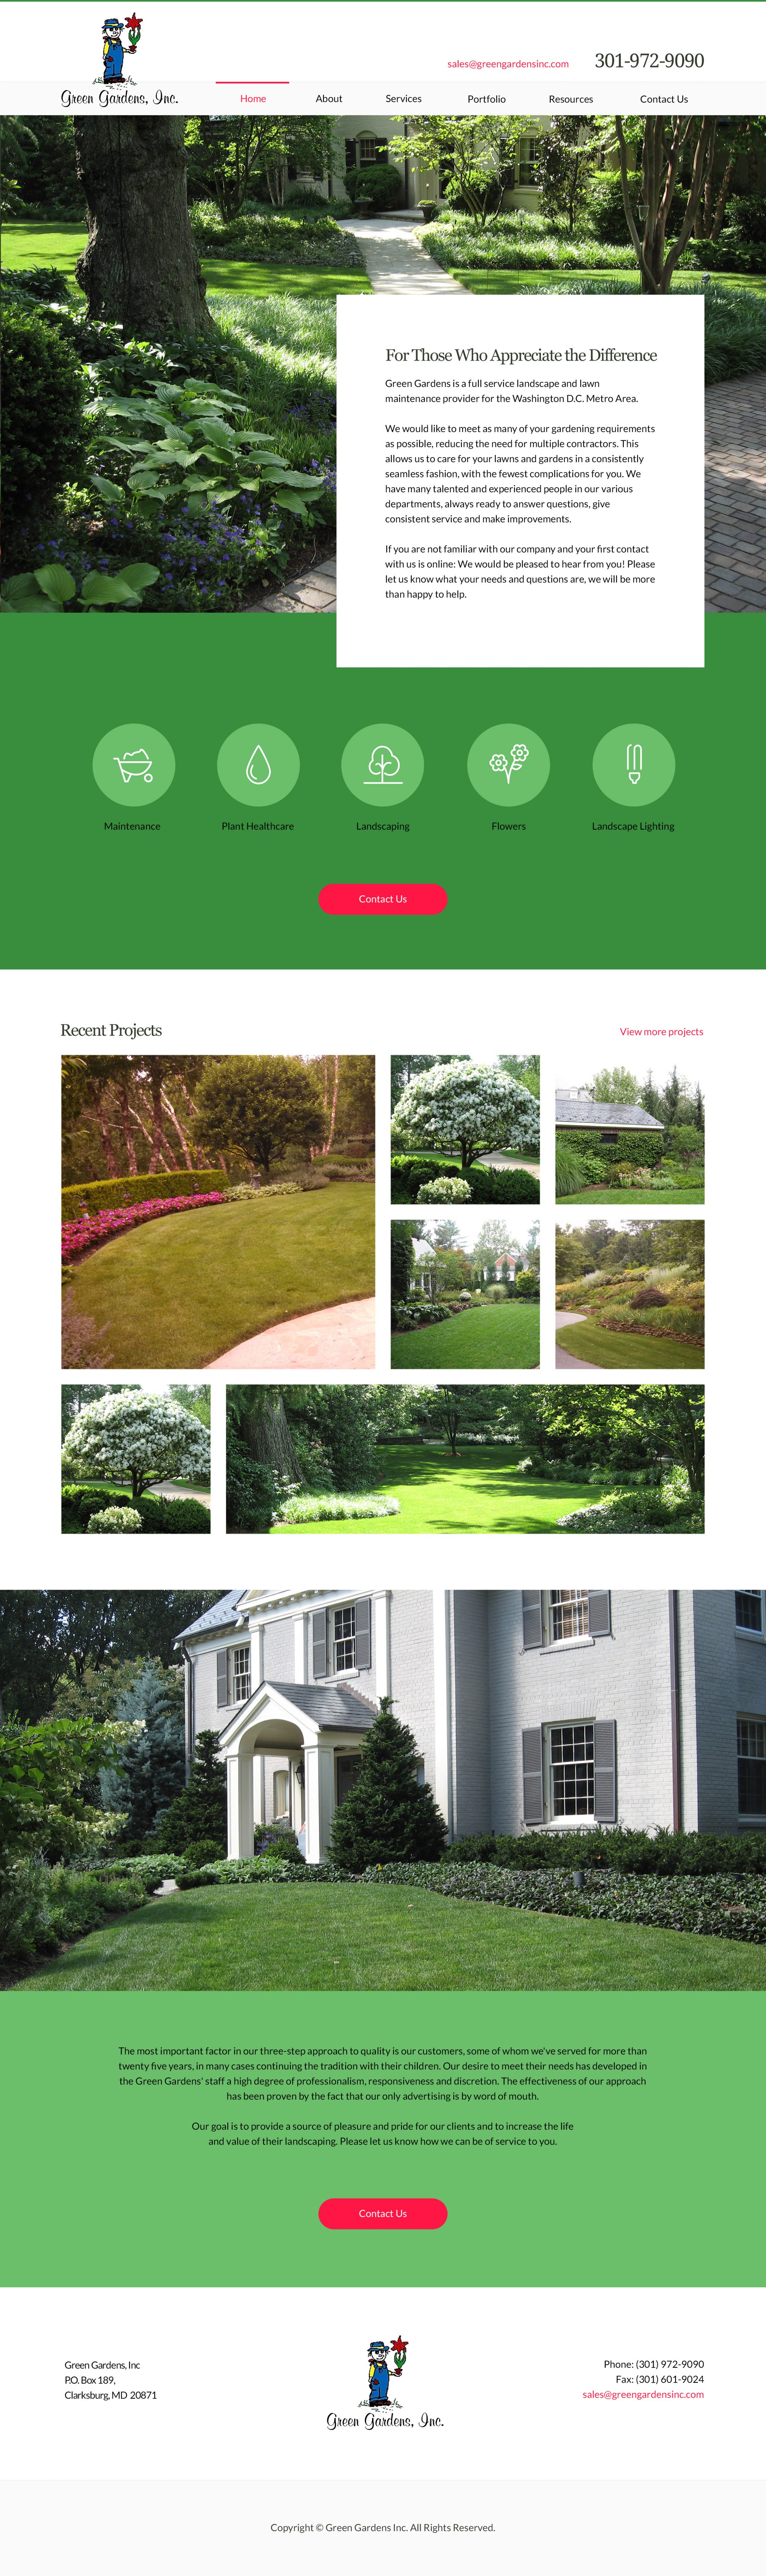 greengardensinc.com home page design